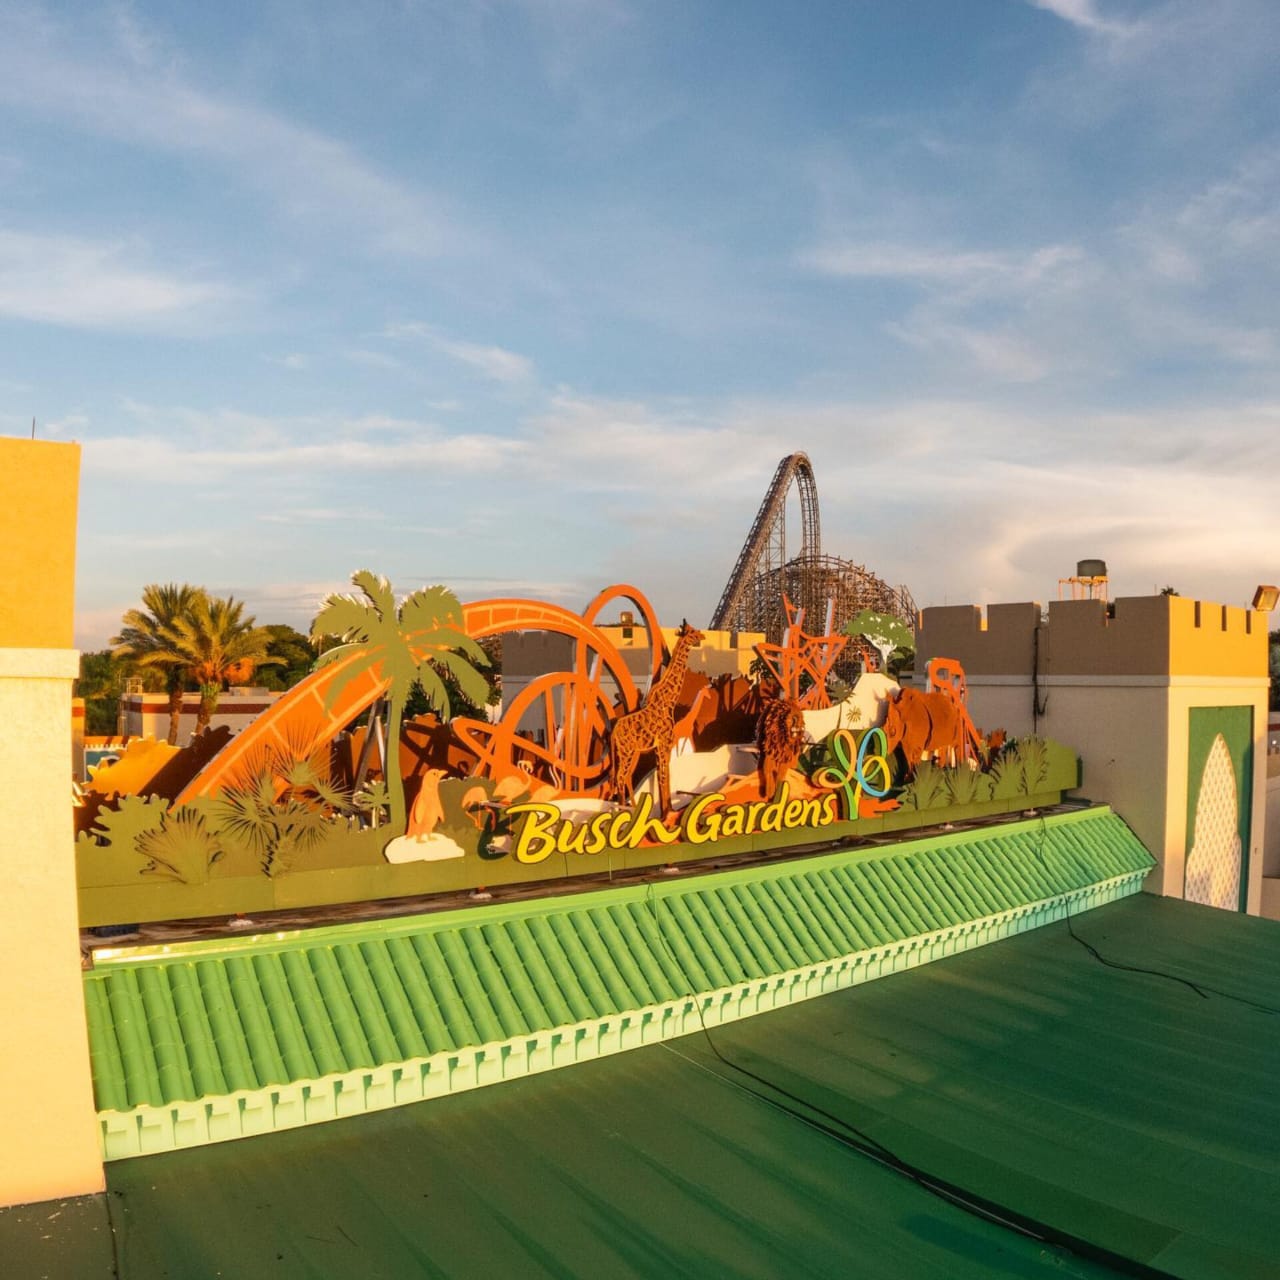 Sube la adrenalina con las mejores atracciones de Busch Gardens